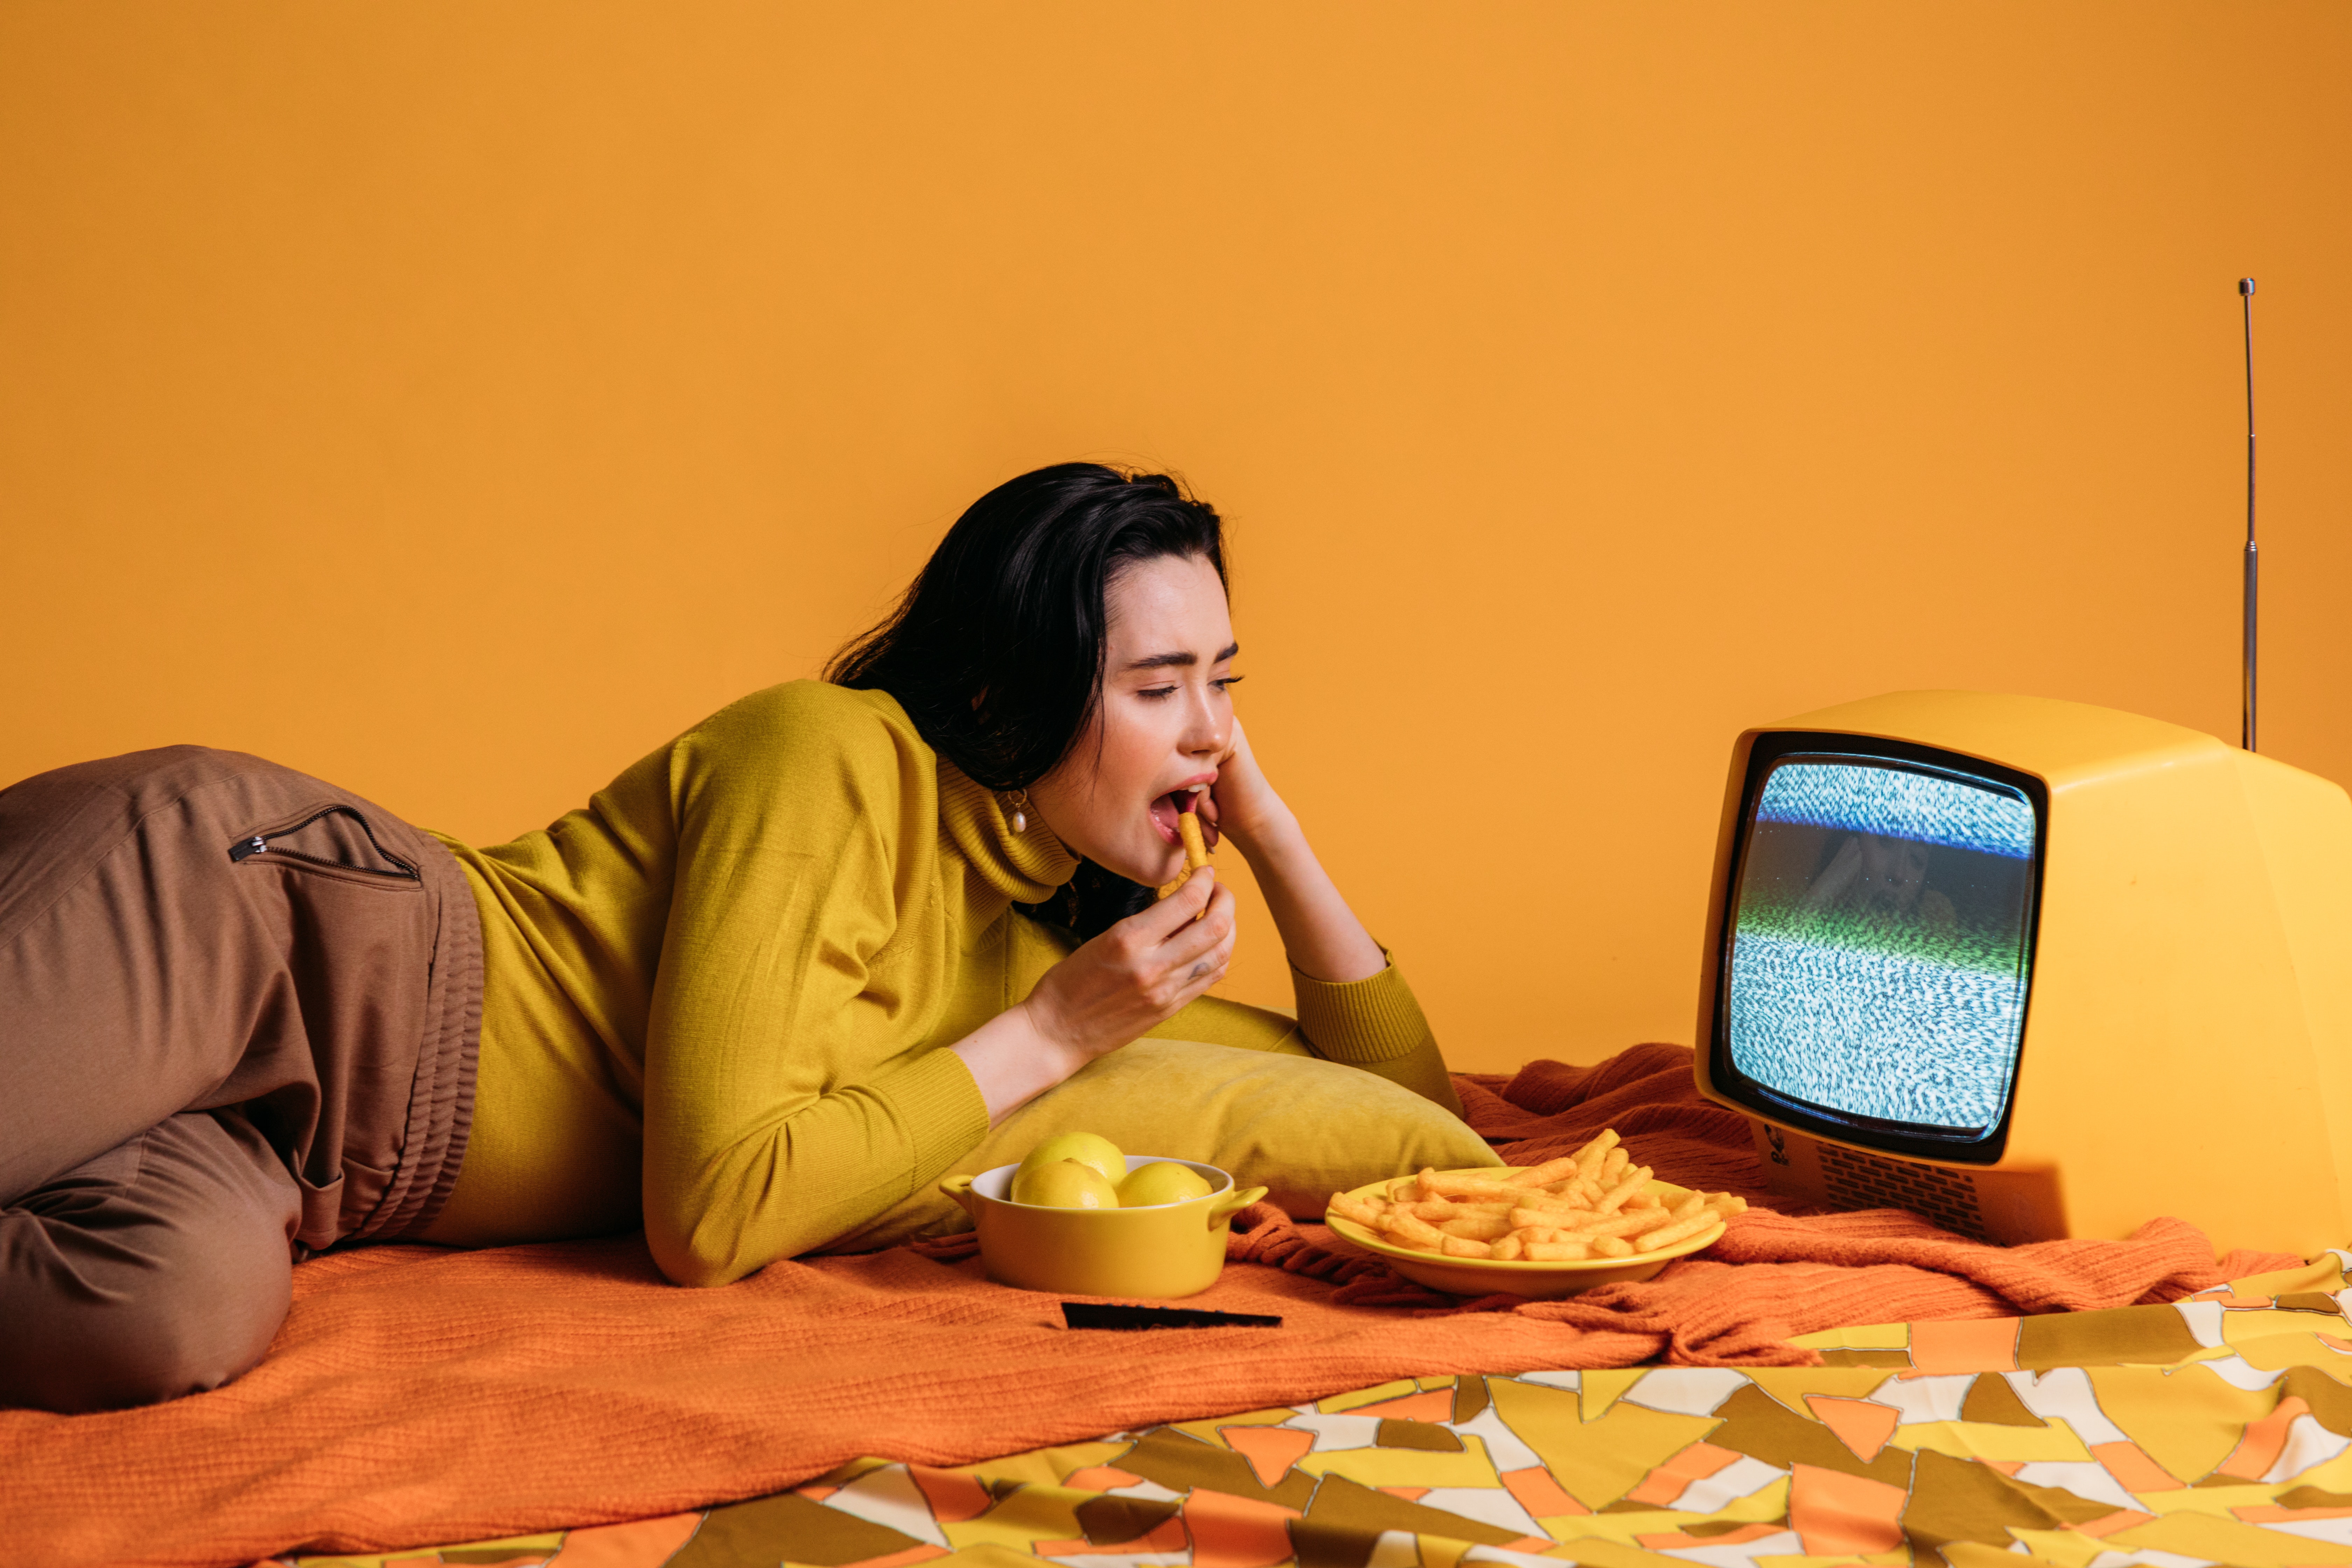 femme mangeant des frites en regardant un écran